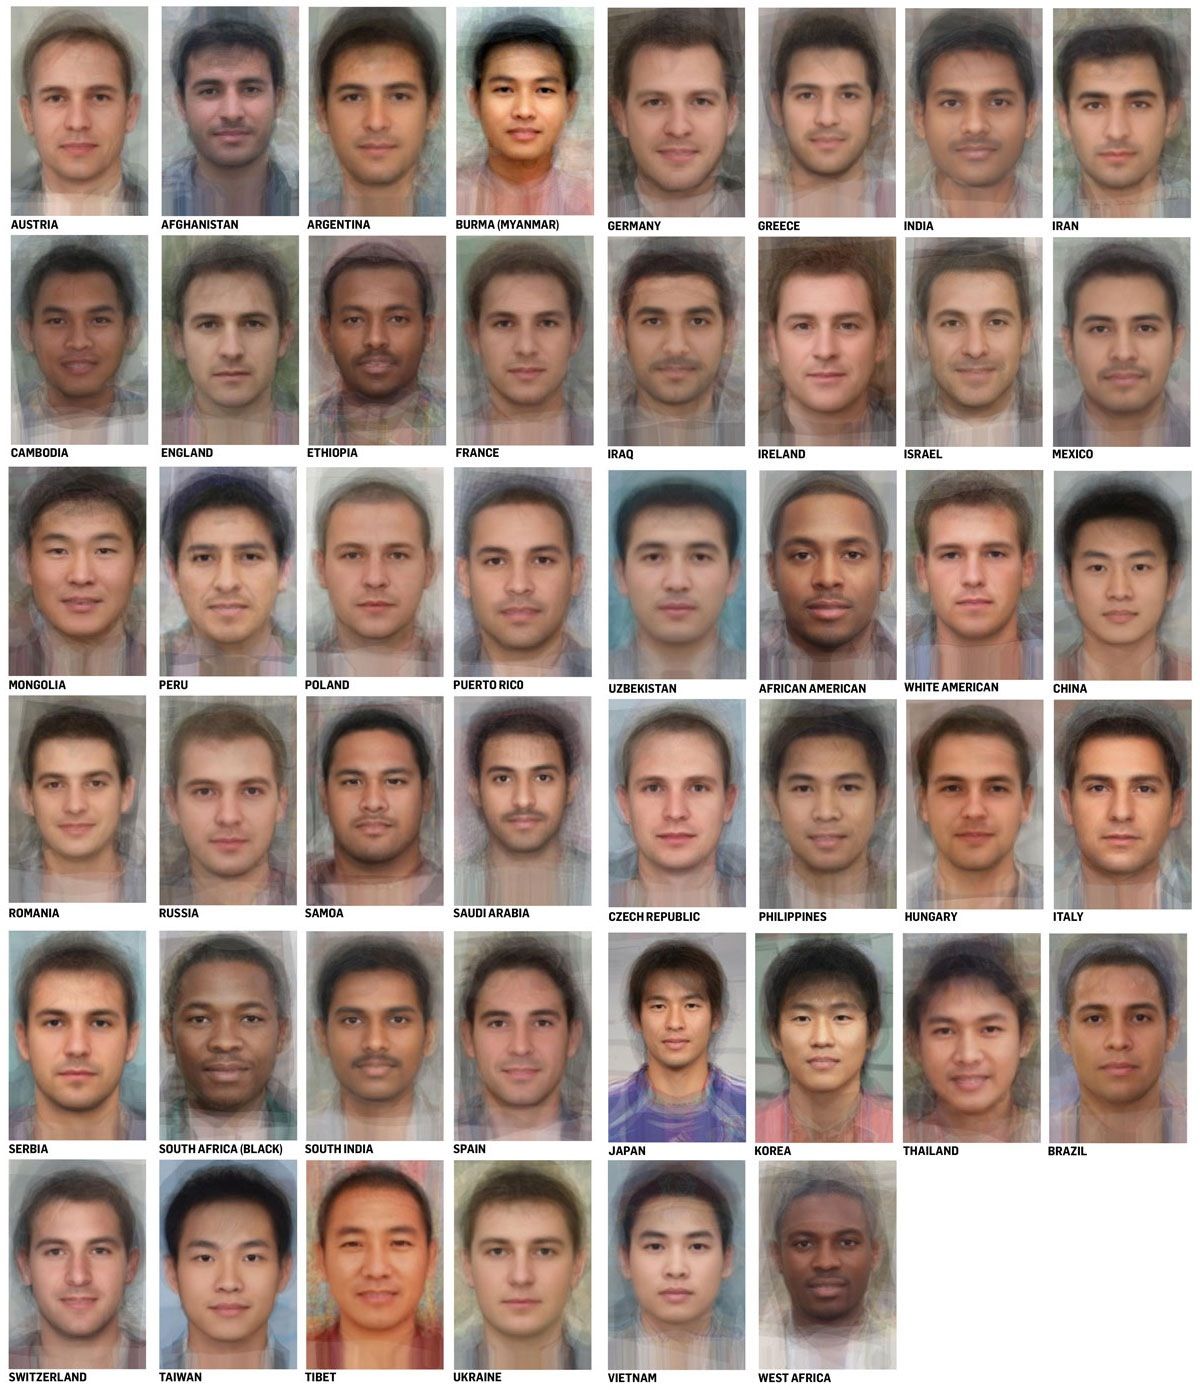 世界41カ国の人種別女性の平均的な顔 男性の平均顔 カラパイア